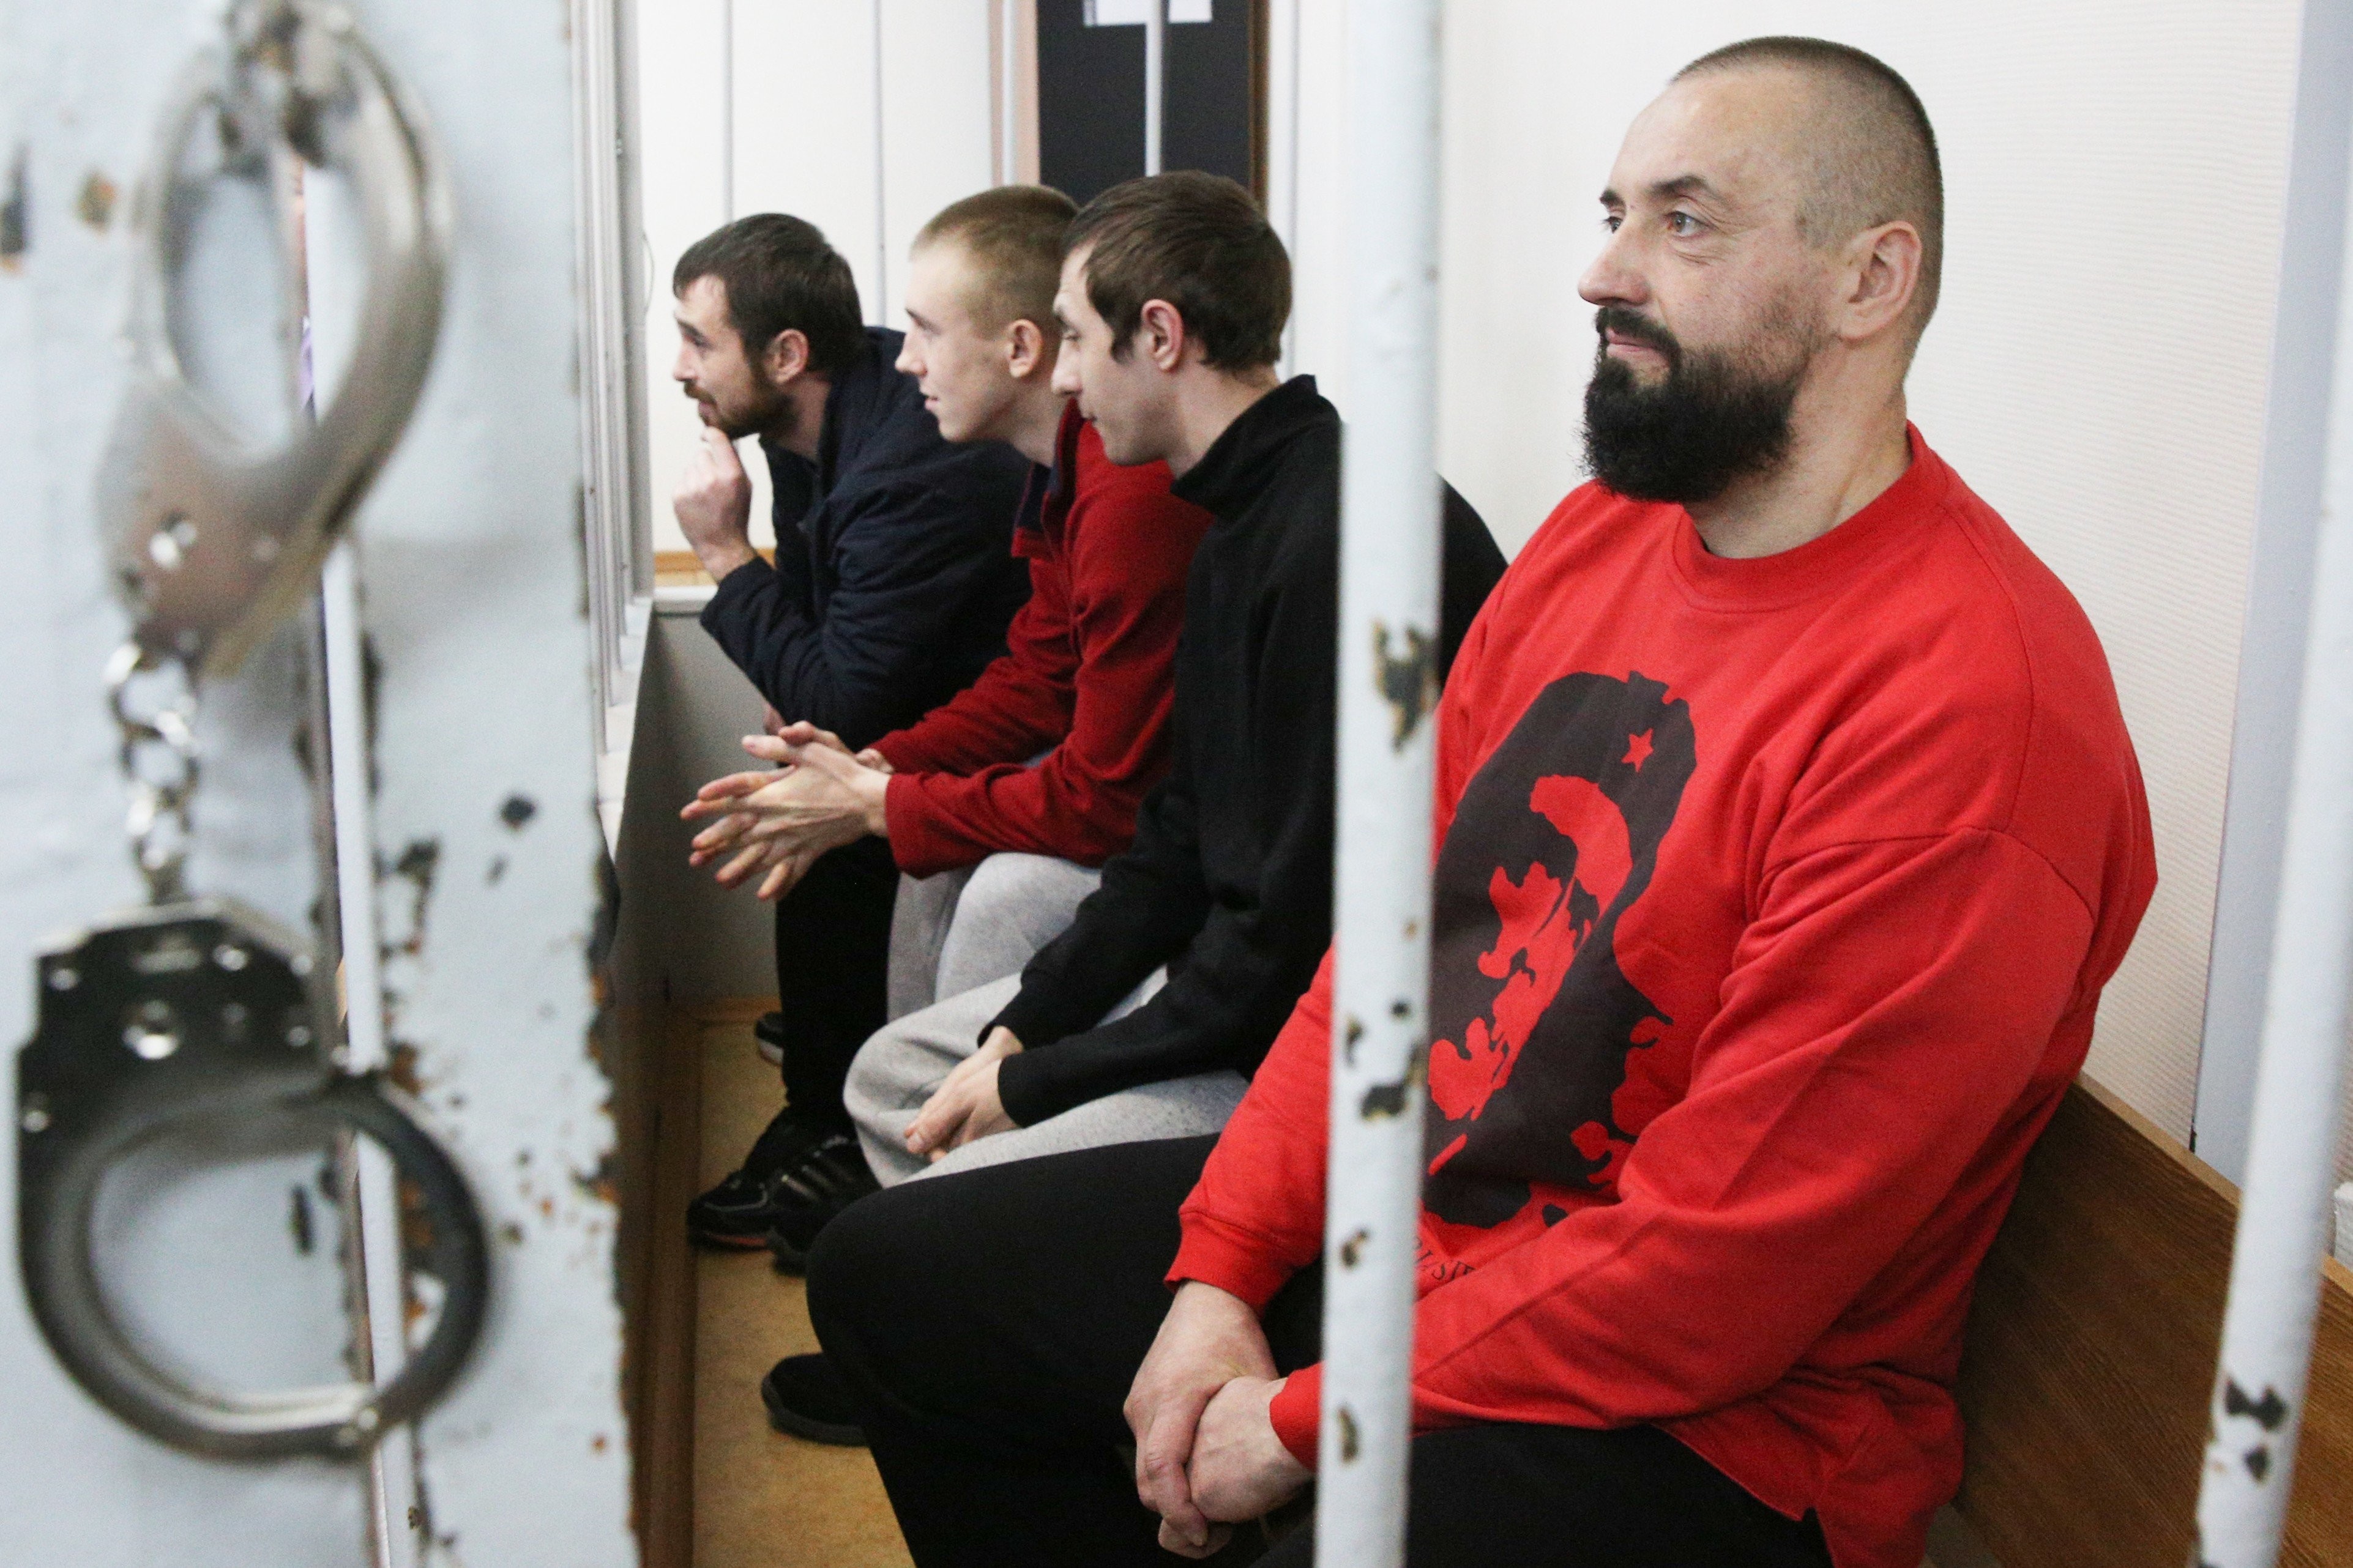 Задержанные в Керченском проливе украинские моряки. Фото © Агентство городских новостей "Москва"
